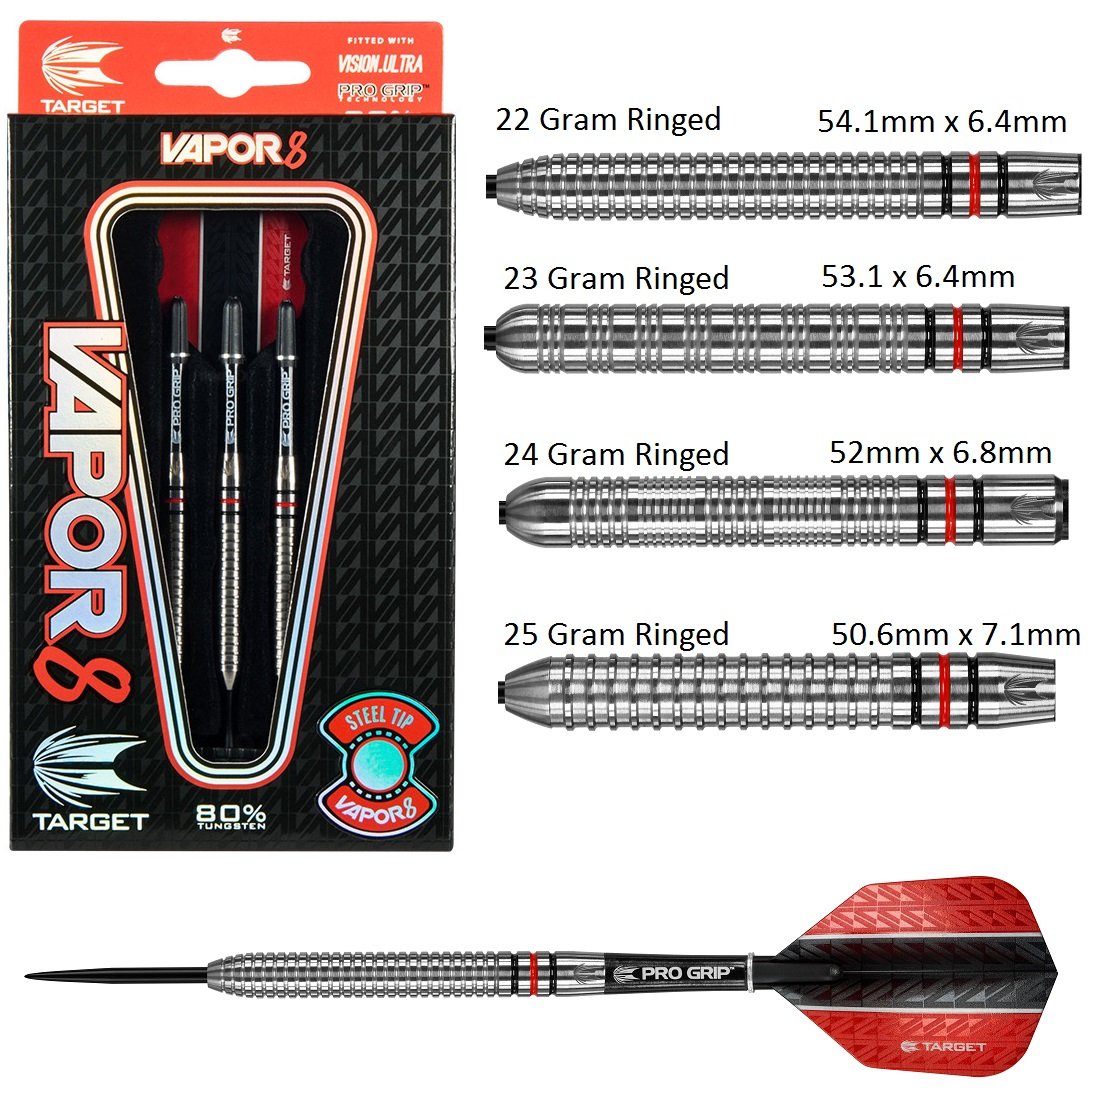 target vapor 8 darts